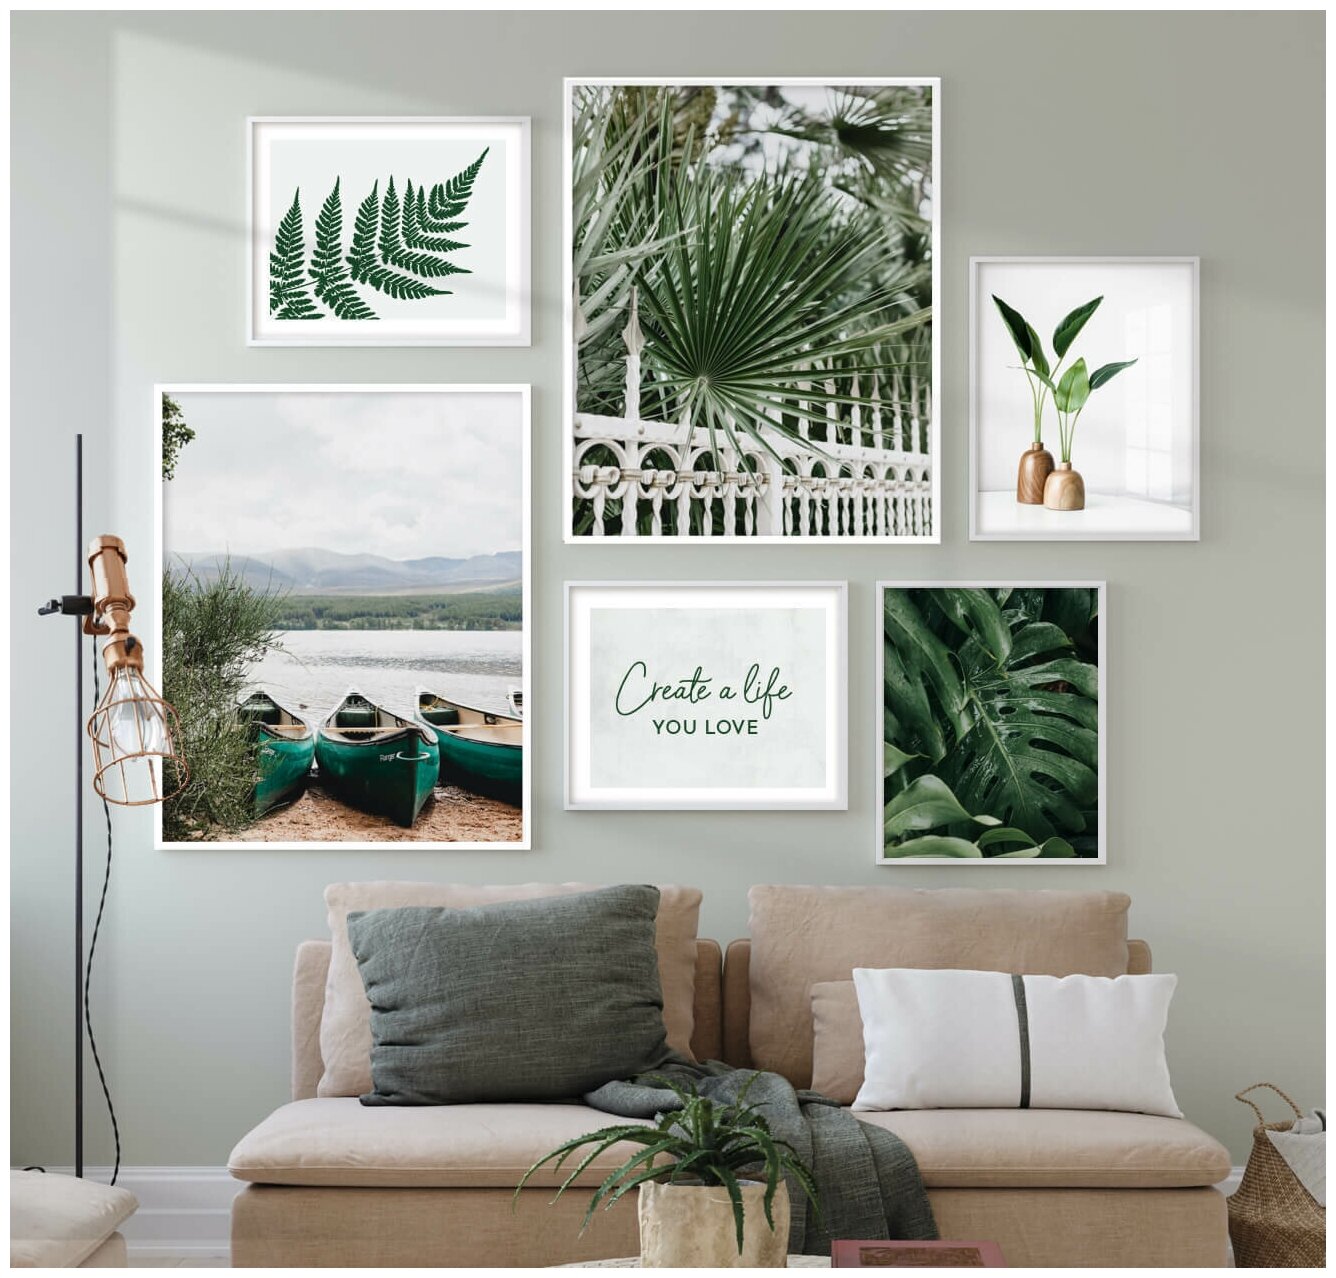 6 постеров без рамки "Зеленые растения и лодка на берегу озера" в тубусе / Набор постеров картин для интерьера / Картина для интерьера